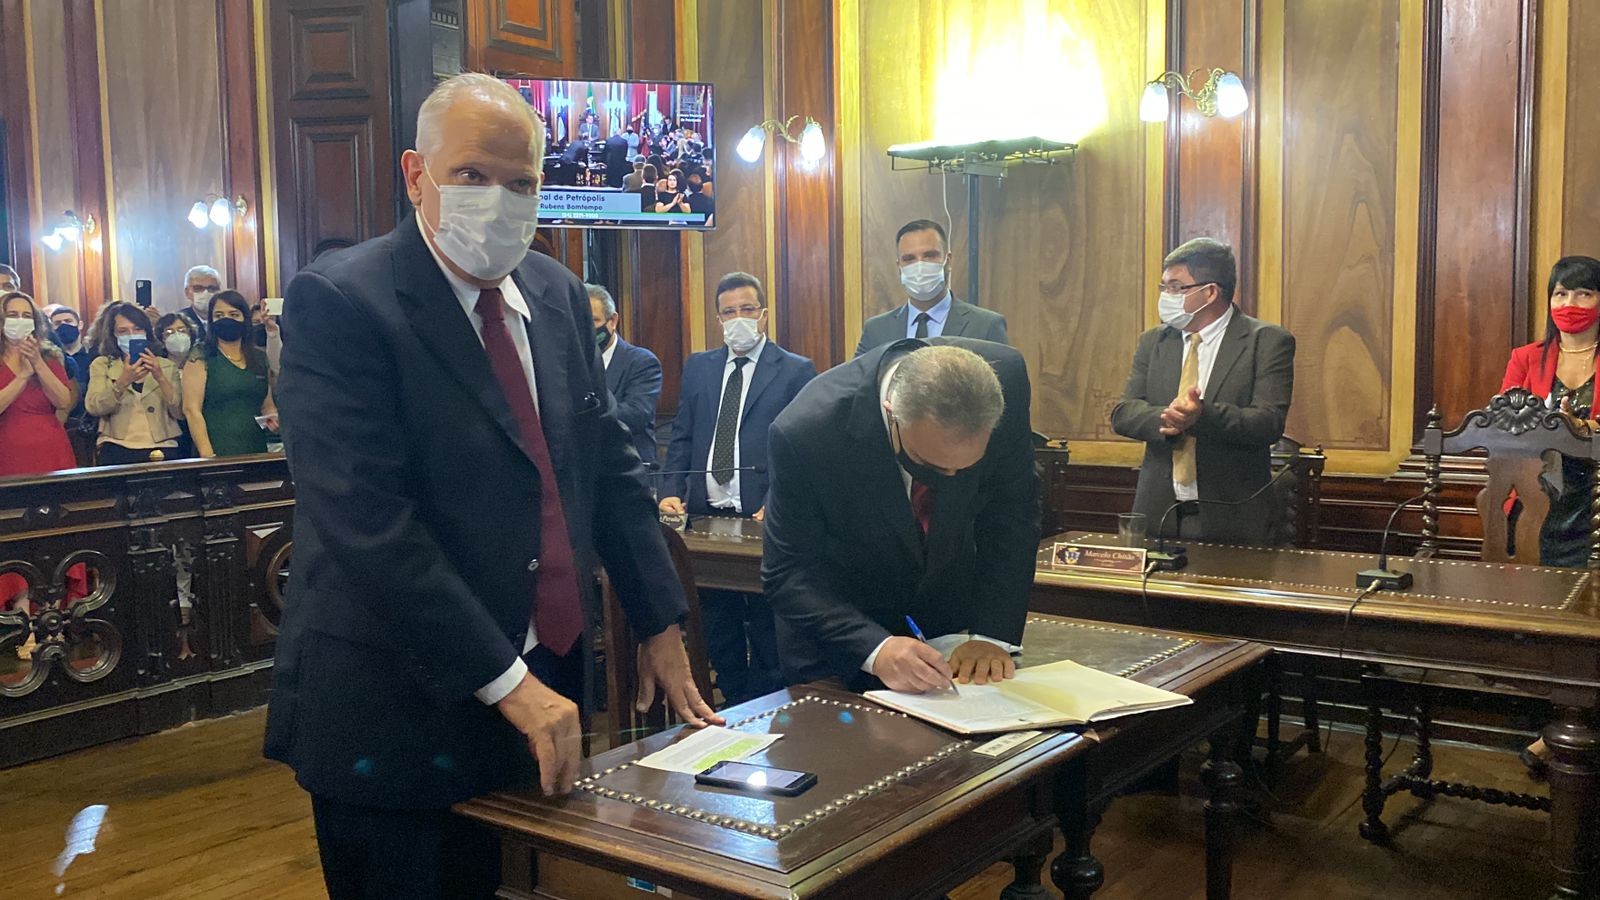 Rubens Bomtempo toma posse como prefeito de Petrópolis, RJ, em cerimônia na Câmara